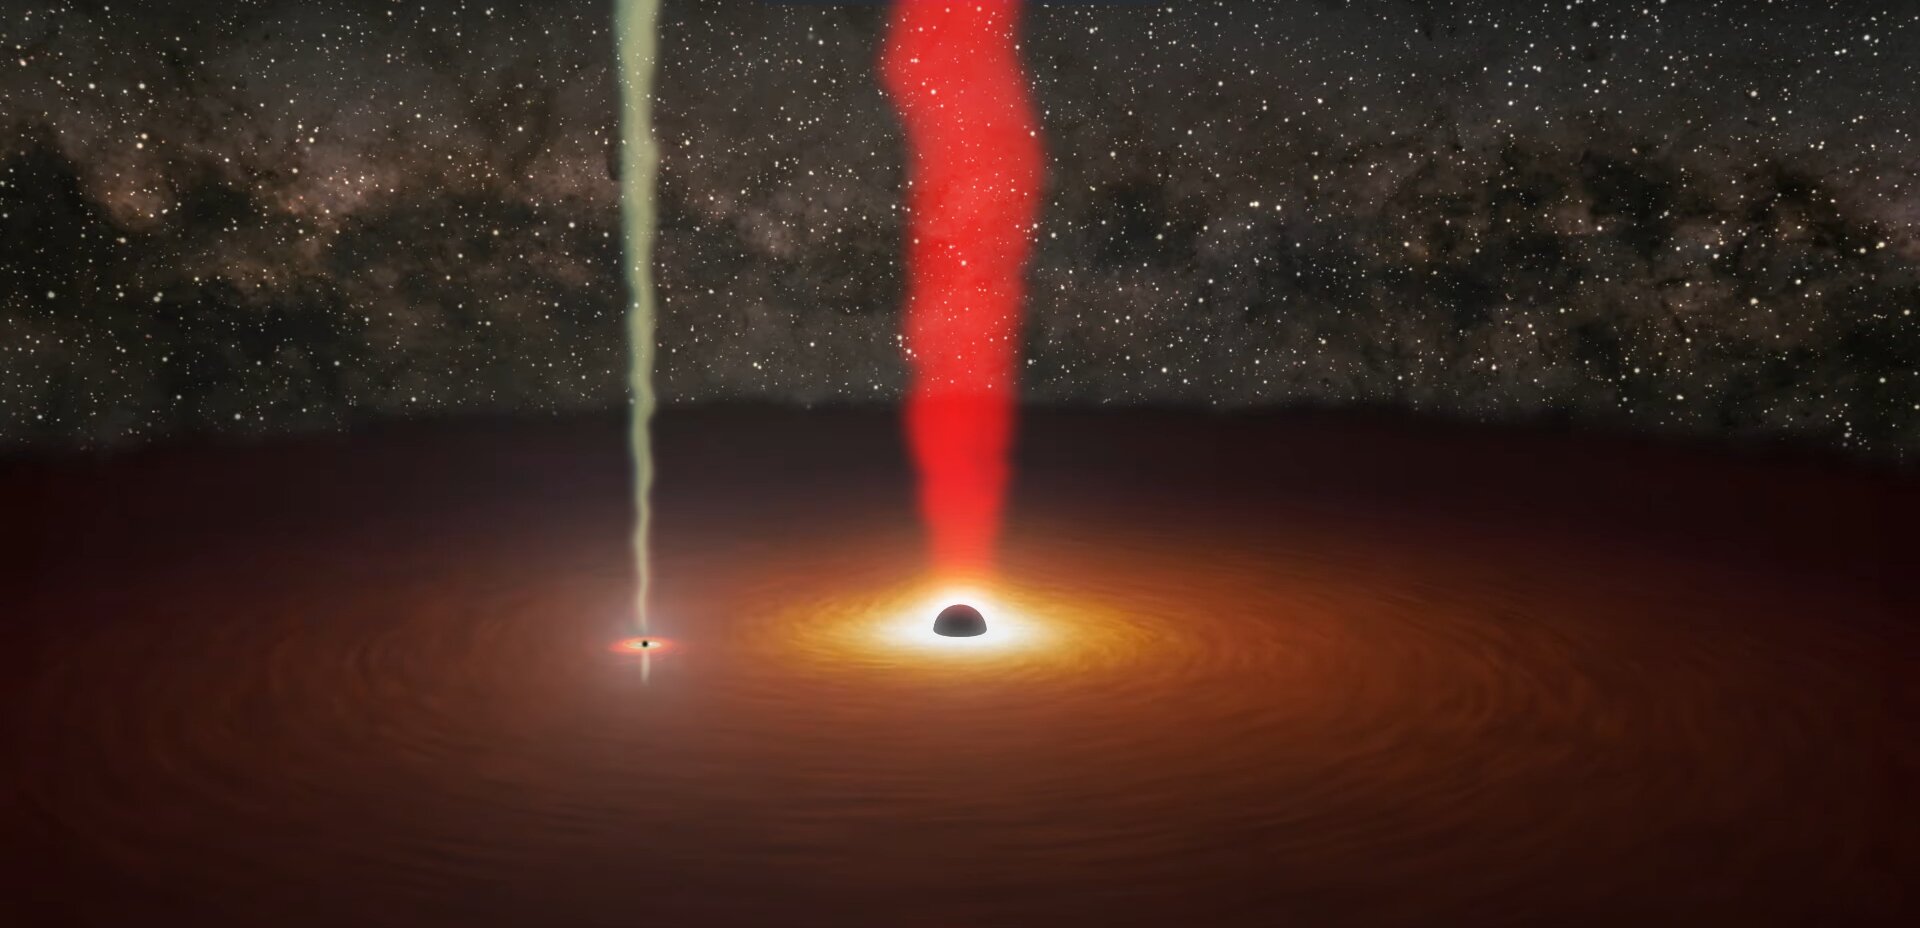 Wizja artystyczna galaktyki aktywnej OJ 287, w której centrum znajduje się nie jedna, a dwie okrążają się nawzajem czarne dziury. Obu obiektom towarzyszą dżety: większy, związany z bardziej masywną czarną dziurą, o czerwonawym zabarwieniu, i mniejszy o barwie żółtawej. Zwykle widoczny jest tylko czerwonawy dżet, ale w listopadzie 2021 przez 12 godzin słabszy dżet stał się tym dominującym. Dzięki temu po raz pierwszy bezpośrednio zaobserwowano obecność mniejszej czarnej dziury w układzie. Źródło: NASA/JPL-Caltech/R. Hurt (IPAC) & M. Mugrauer (AIU Jena).